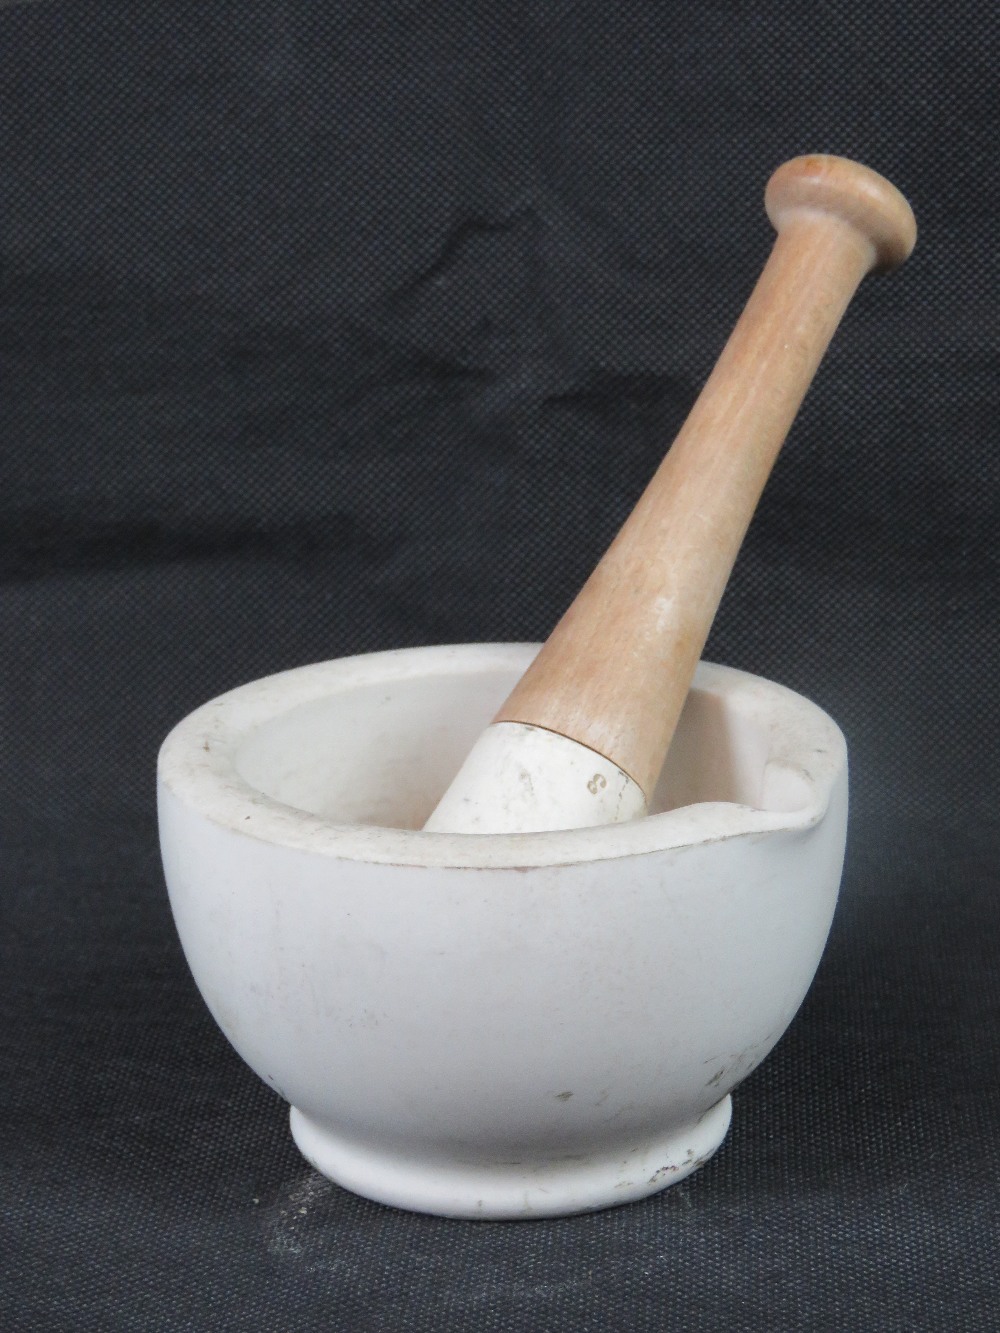 An alabaster mortar and pestle, 13cm dia.